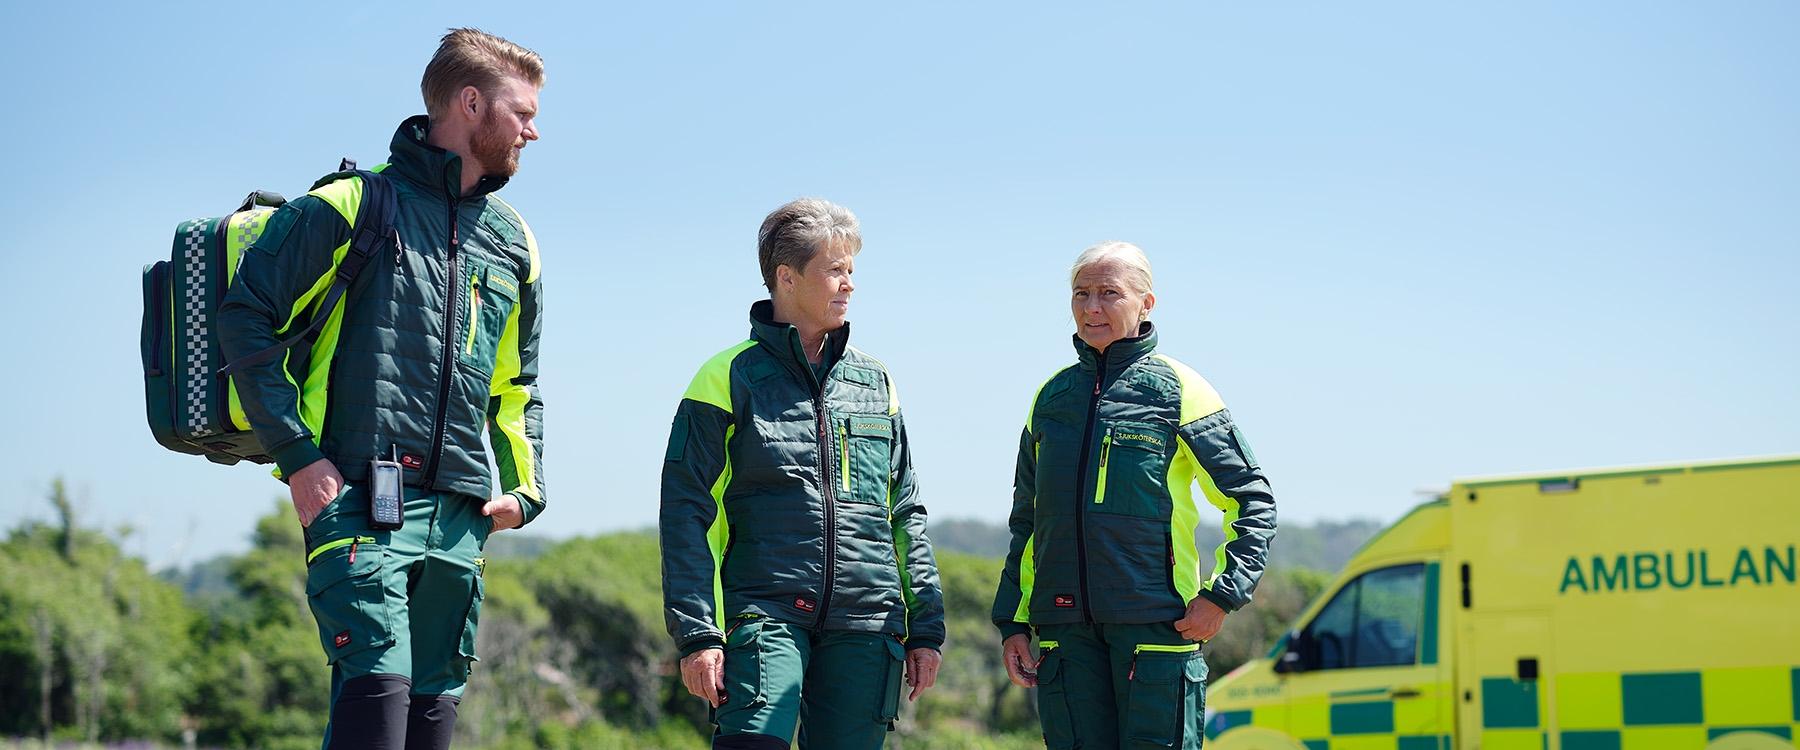 Ambulance staff wearing green work jackets